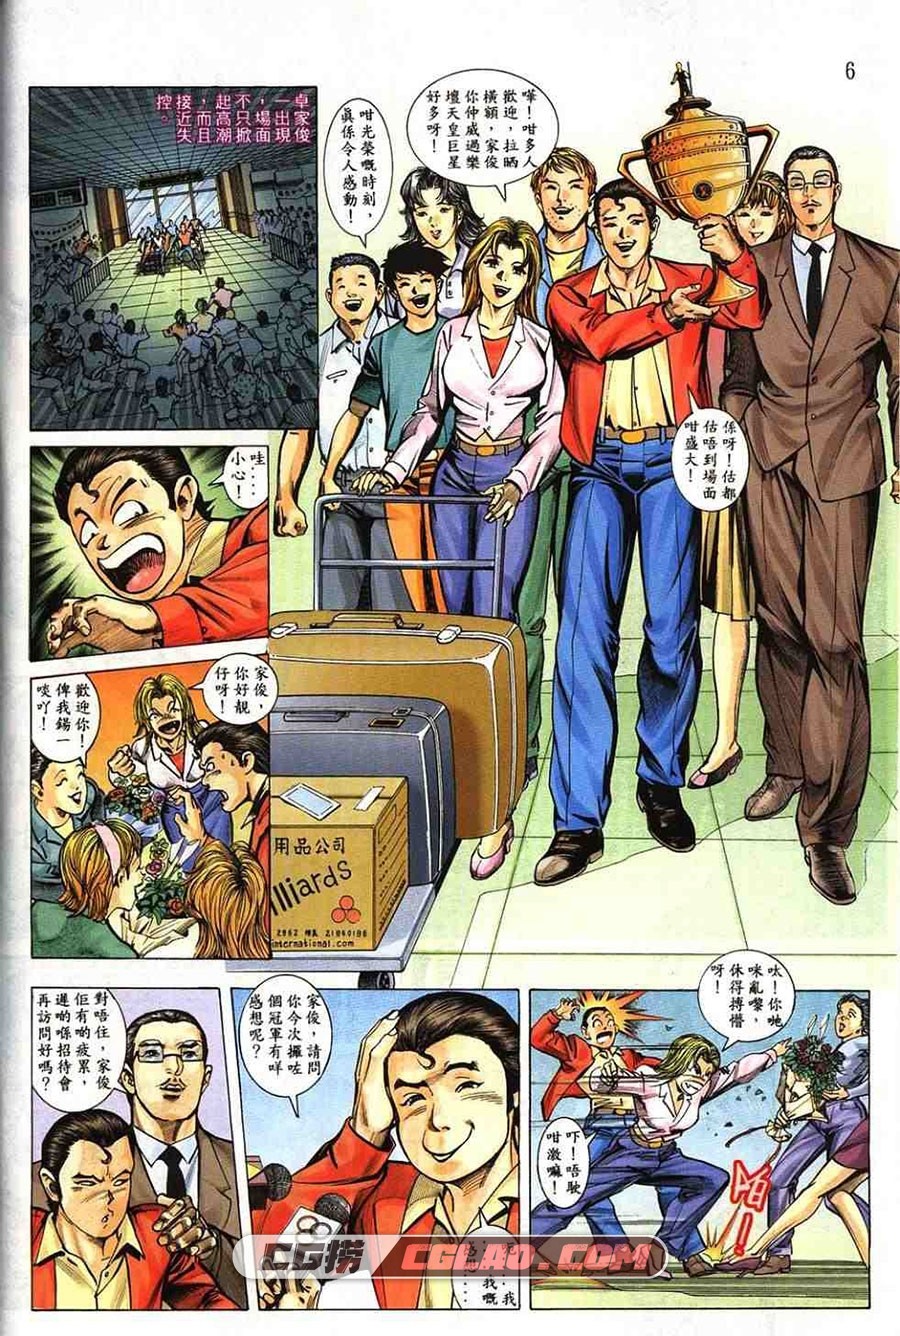 桌球王第二部 上官小宝 1-20册 竞技漫画全集下载 百度网盘,0006.jpg